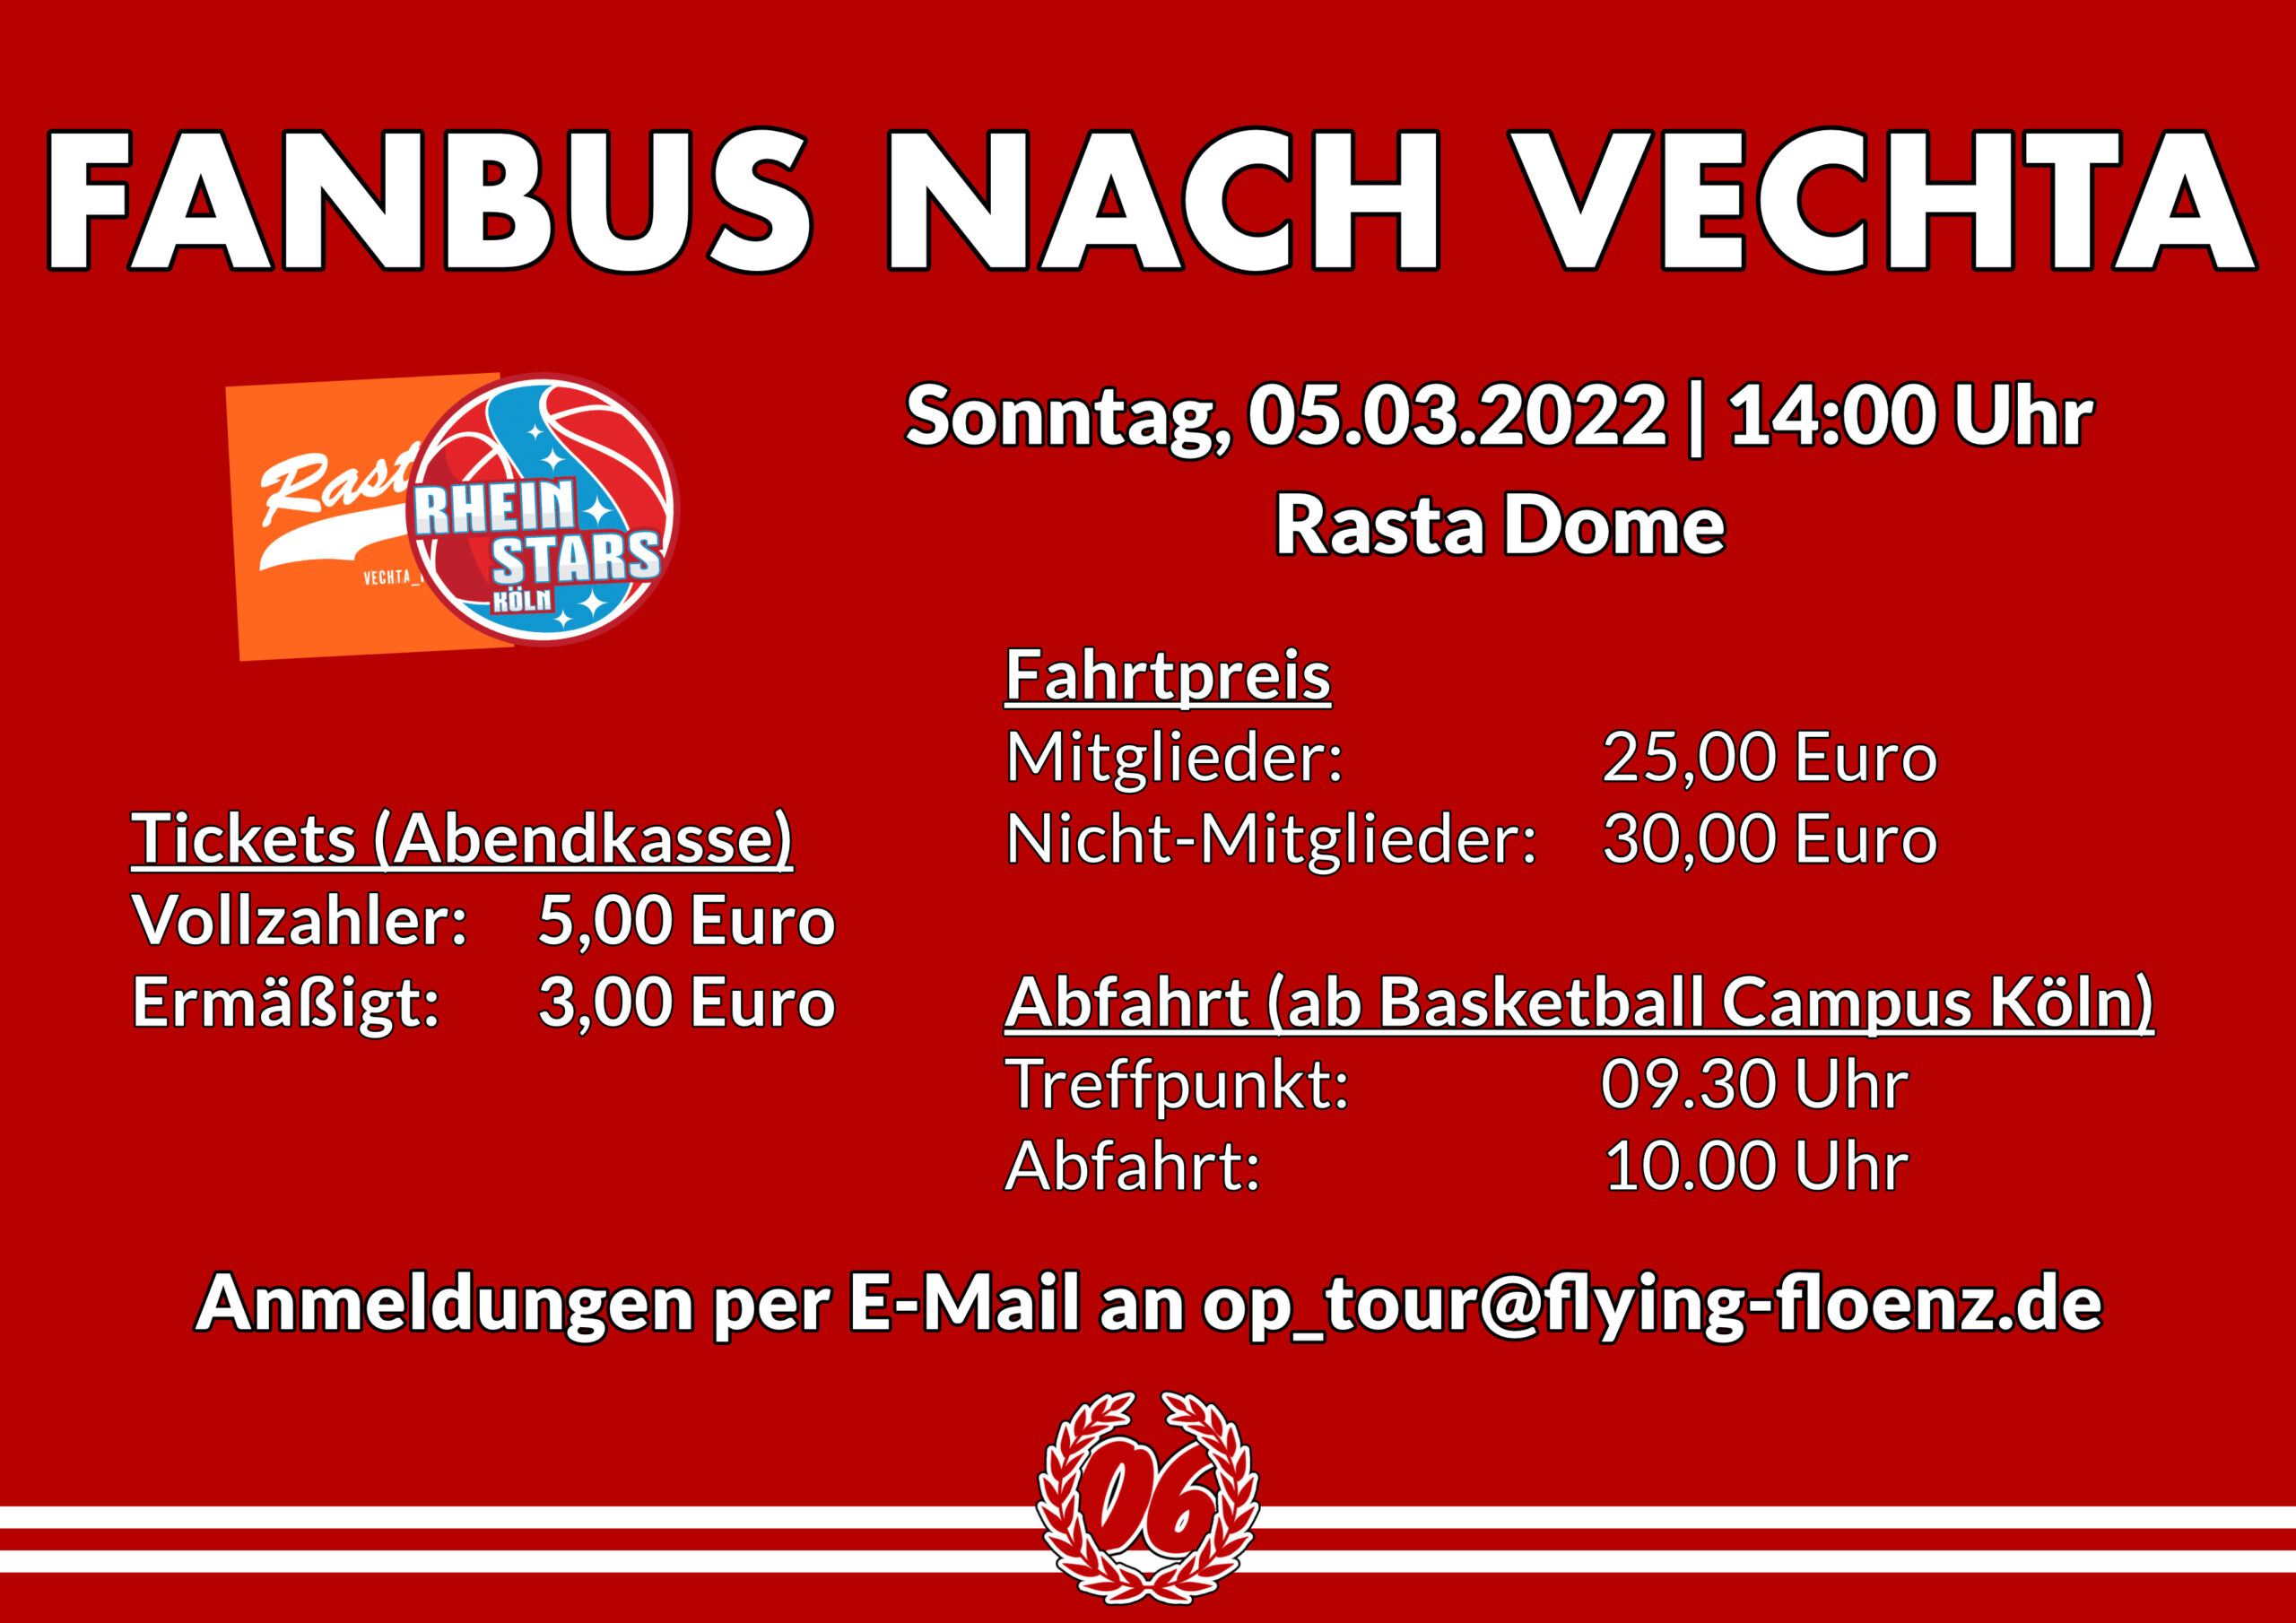 Zum Auswärtsspiel unserer Rheinstars Köln in Vechta am 05.03.2023 rollt ein Fanbus.